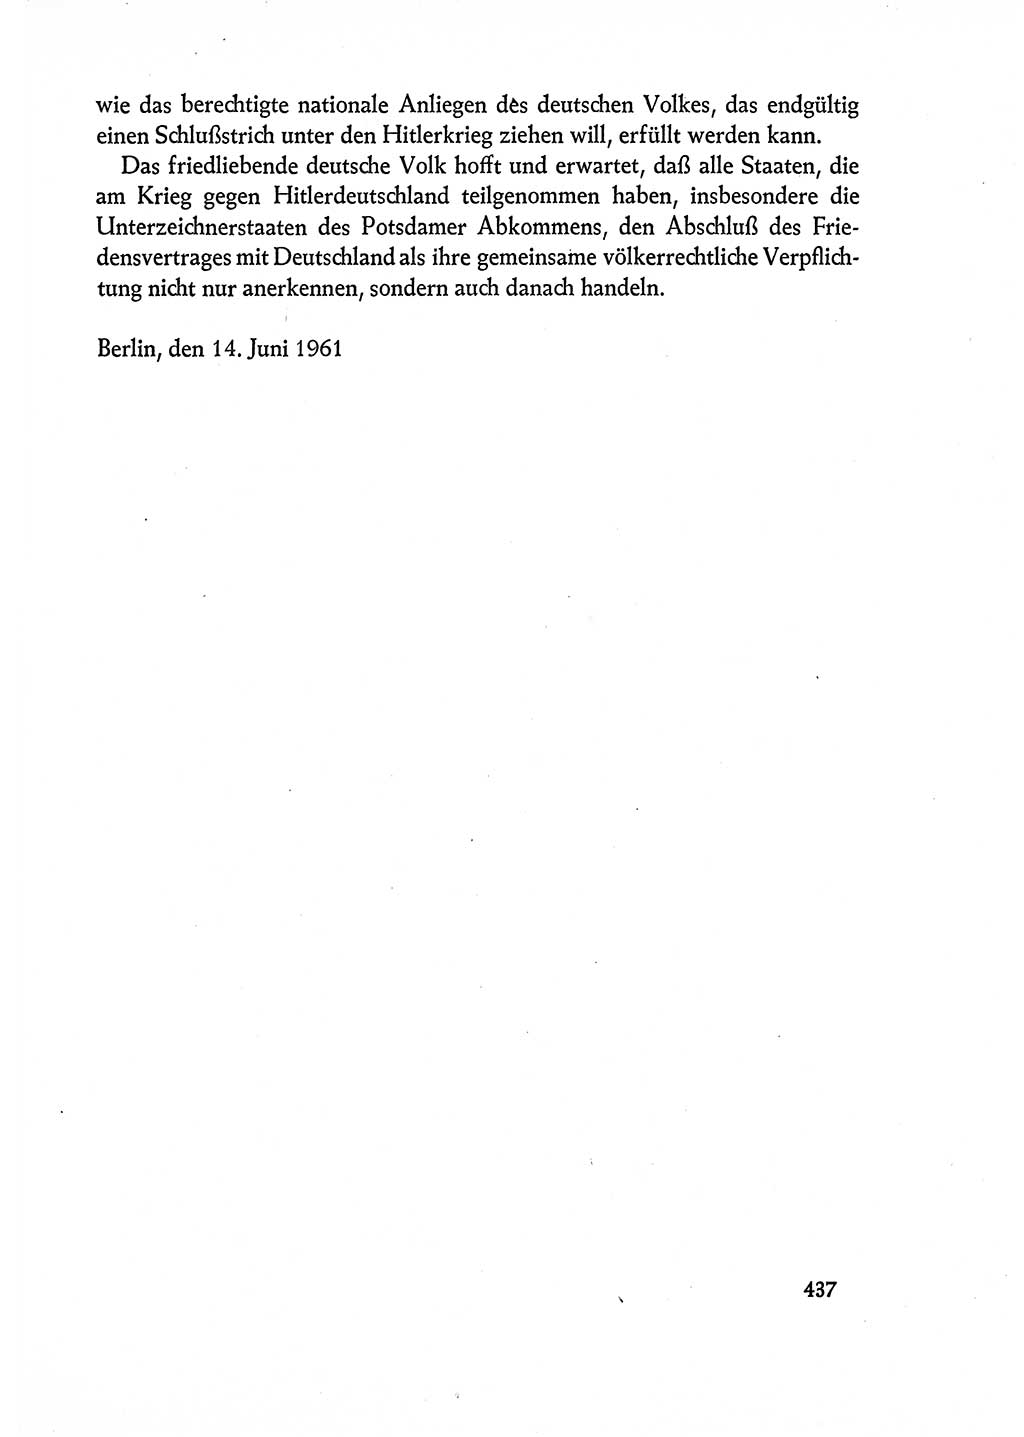 Dokumente der Sozialistischen Einheitspartei Deutschlands (SED) [Deutsche Demokratische Republik (DDR)] 1960-1961, Seite 437 (Dok. SED DDR 1960-1961, S. 437)